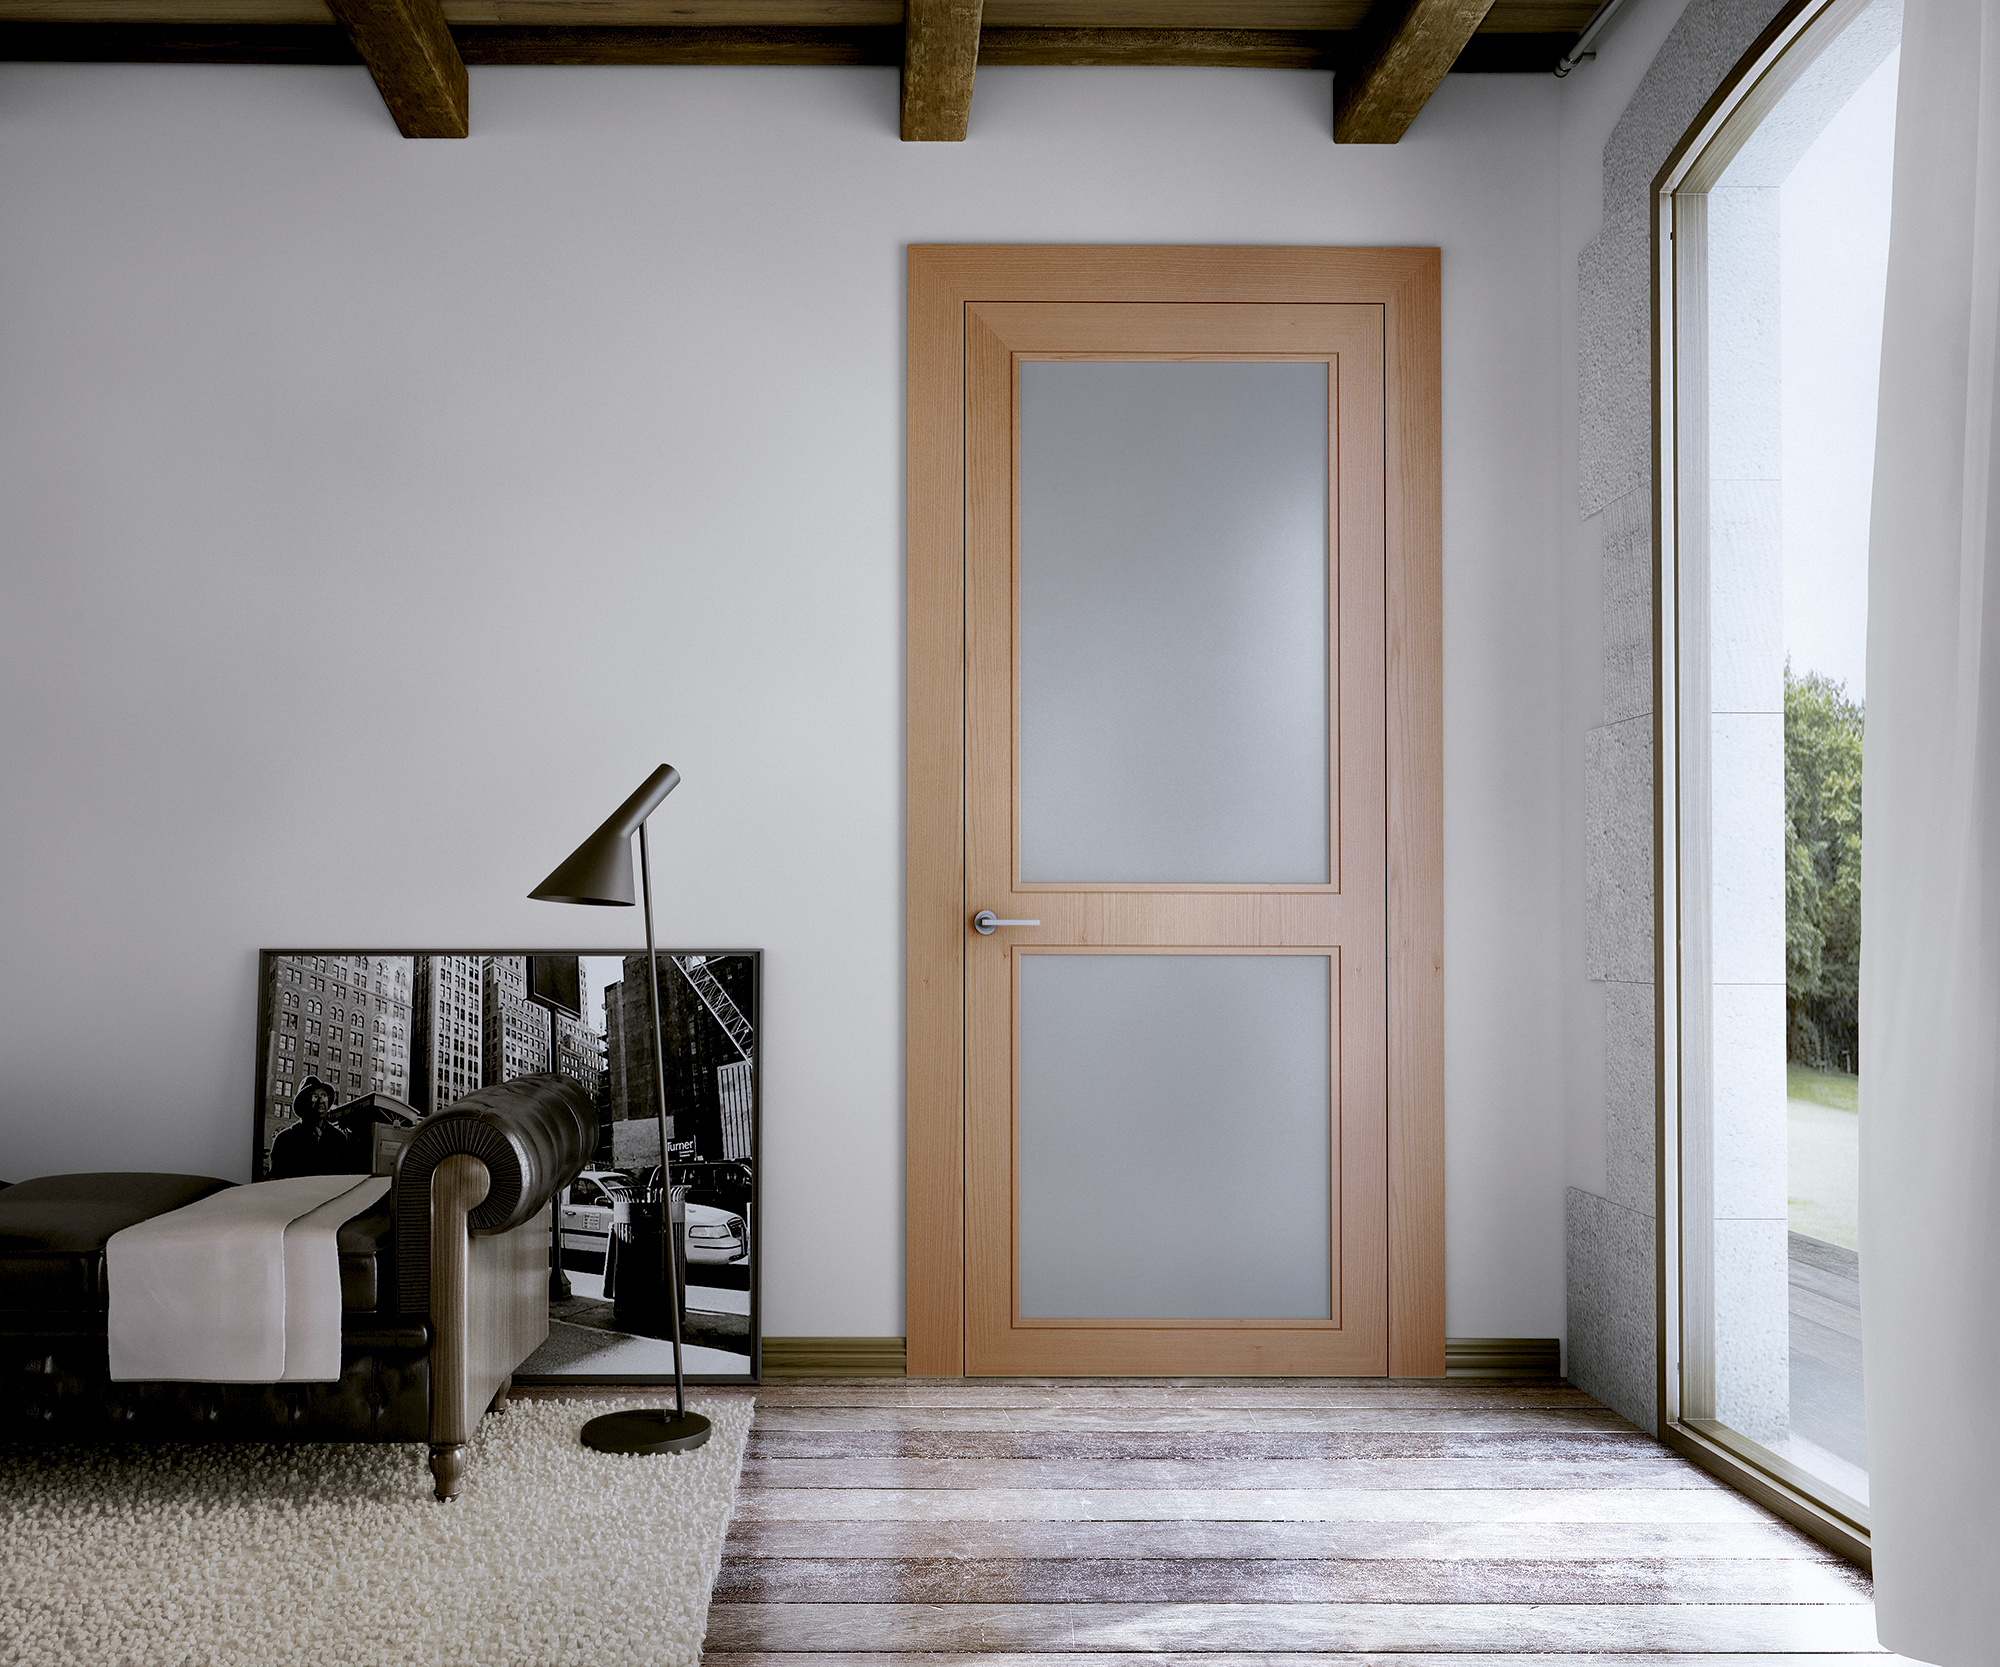 Qué material el más adecuado para una puerta interior? Furniture